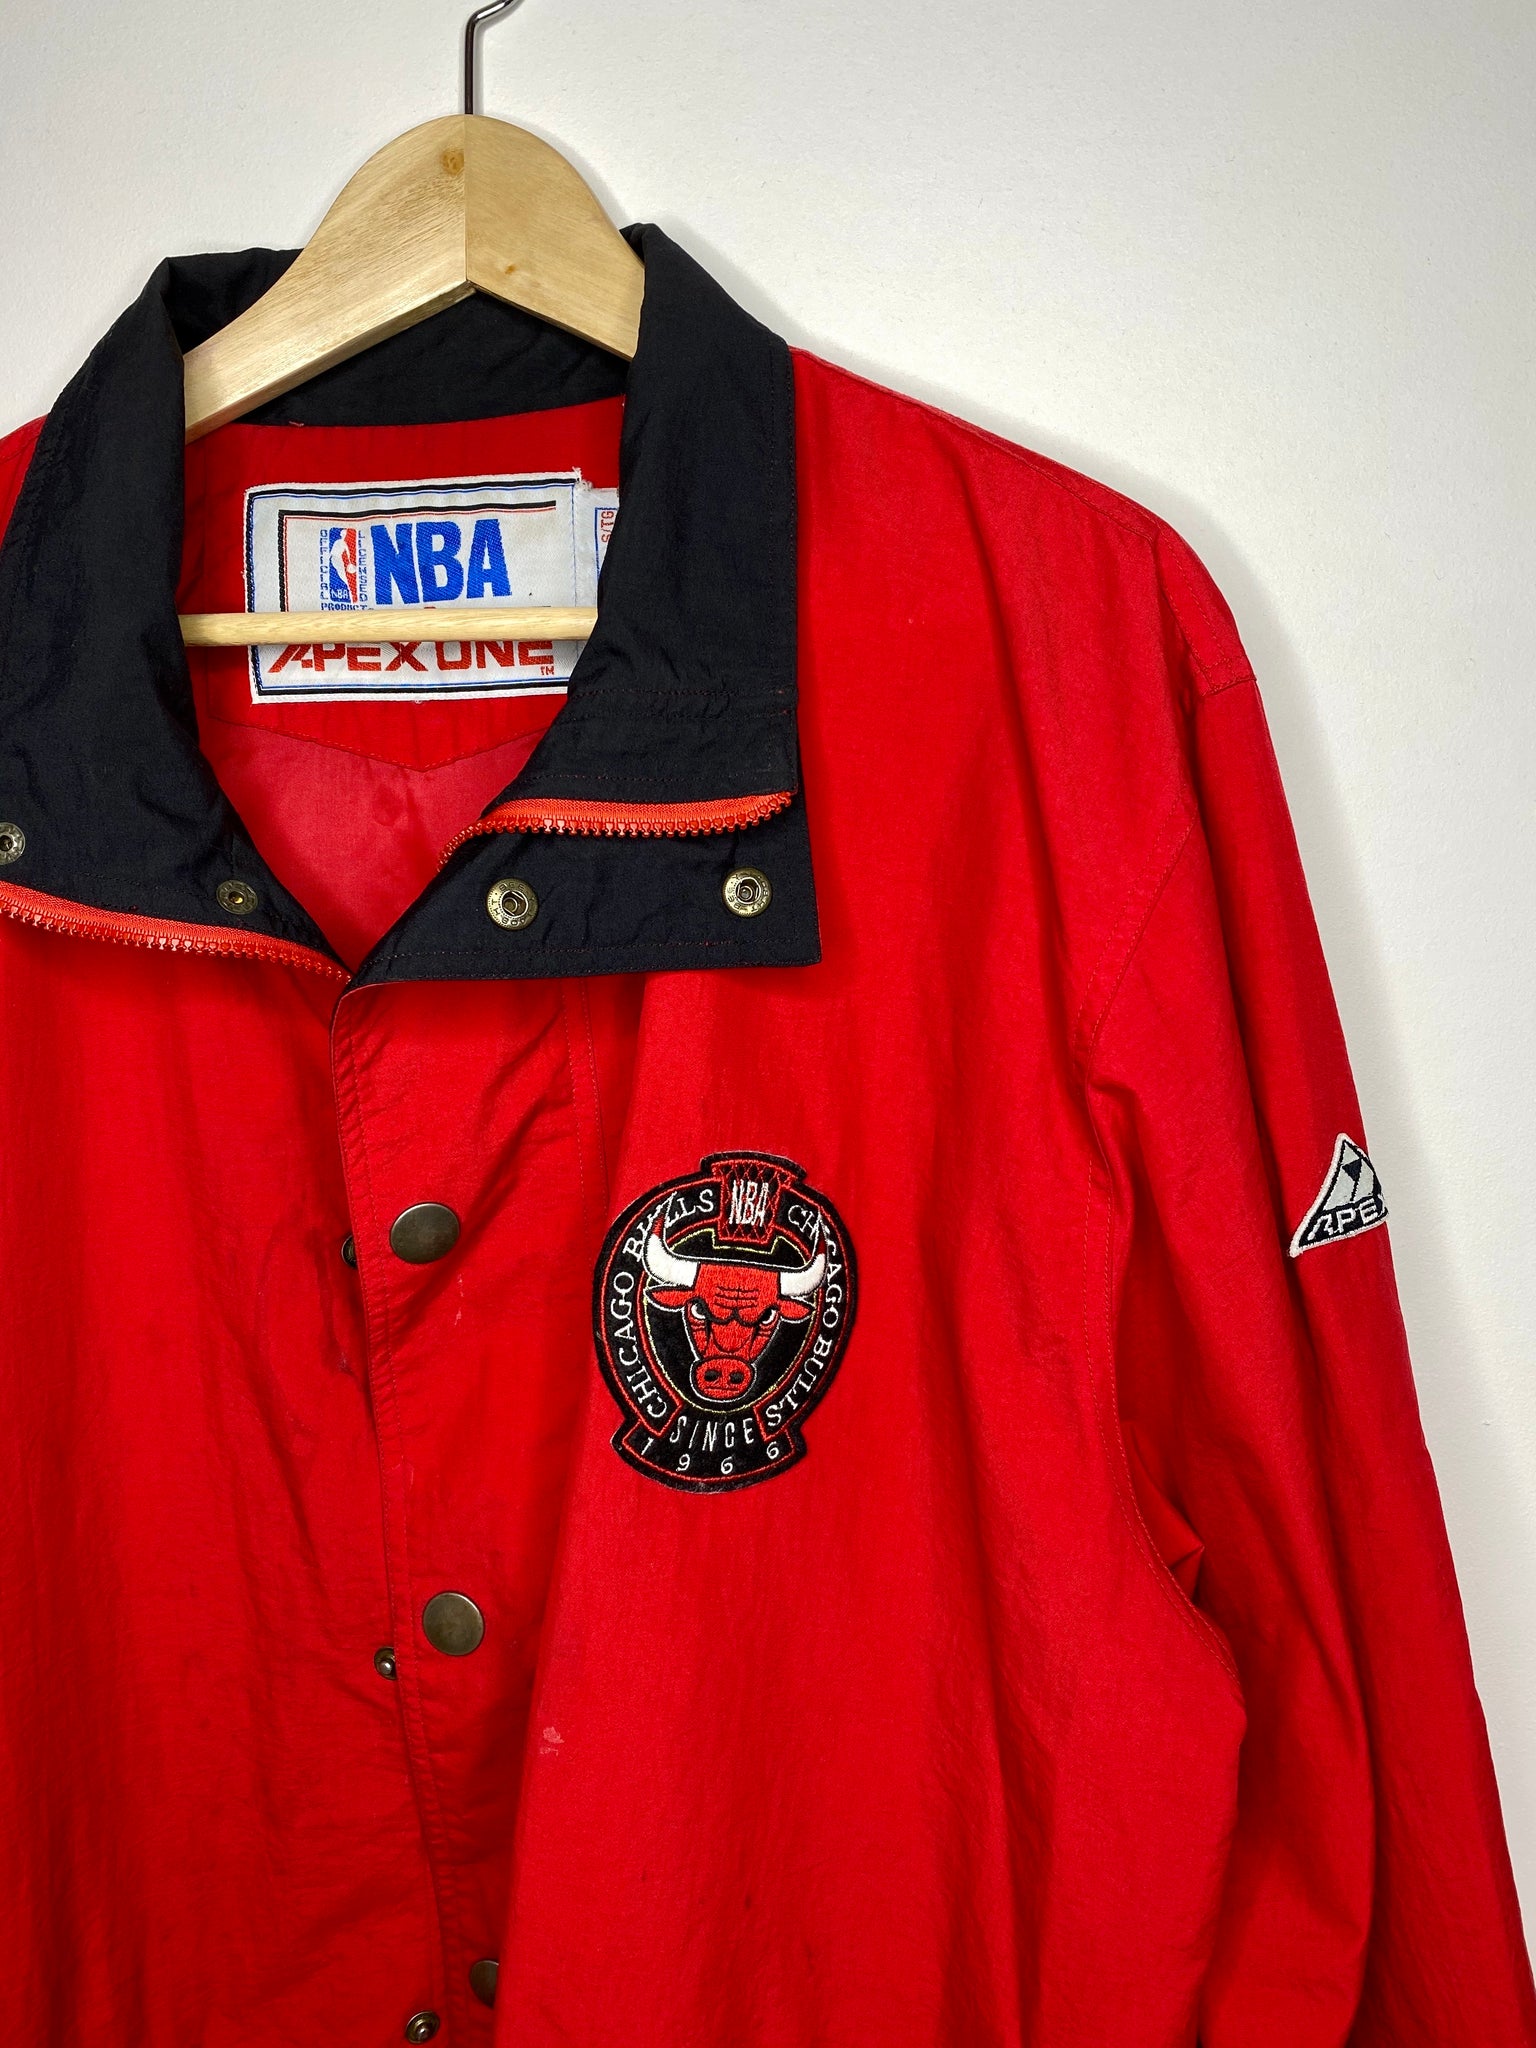 Chicago Bulls Vintage Denim Jacket